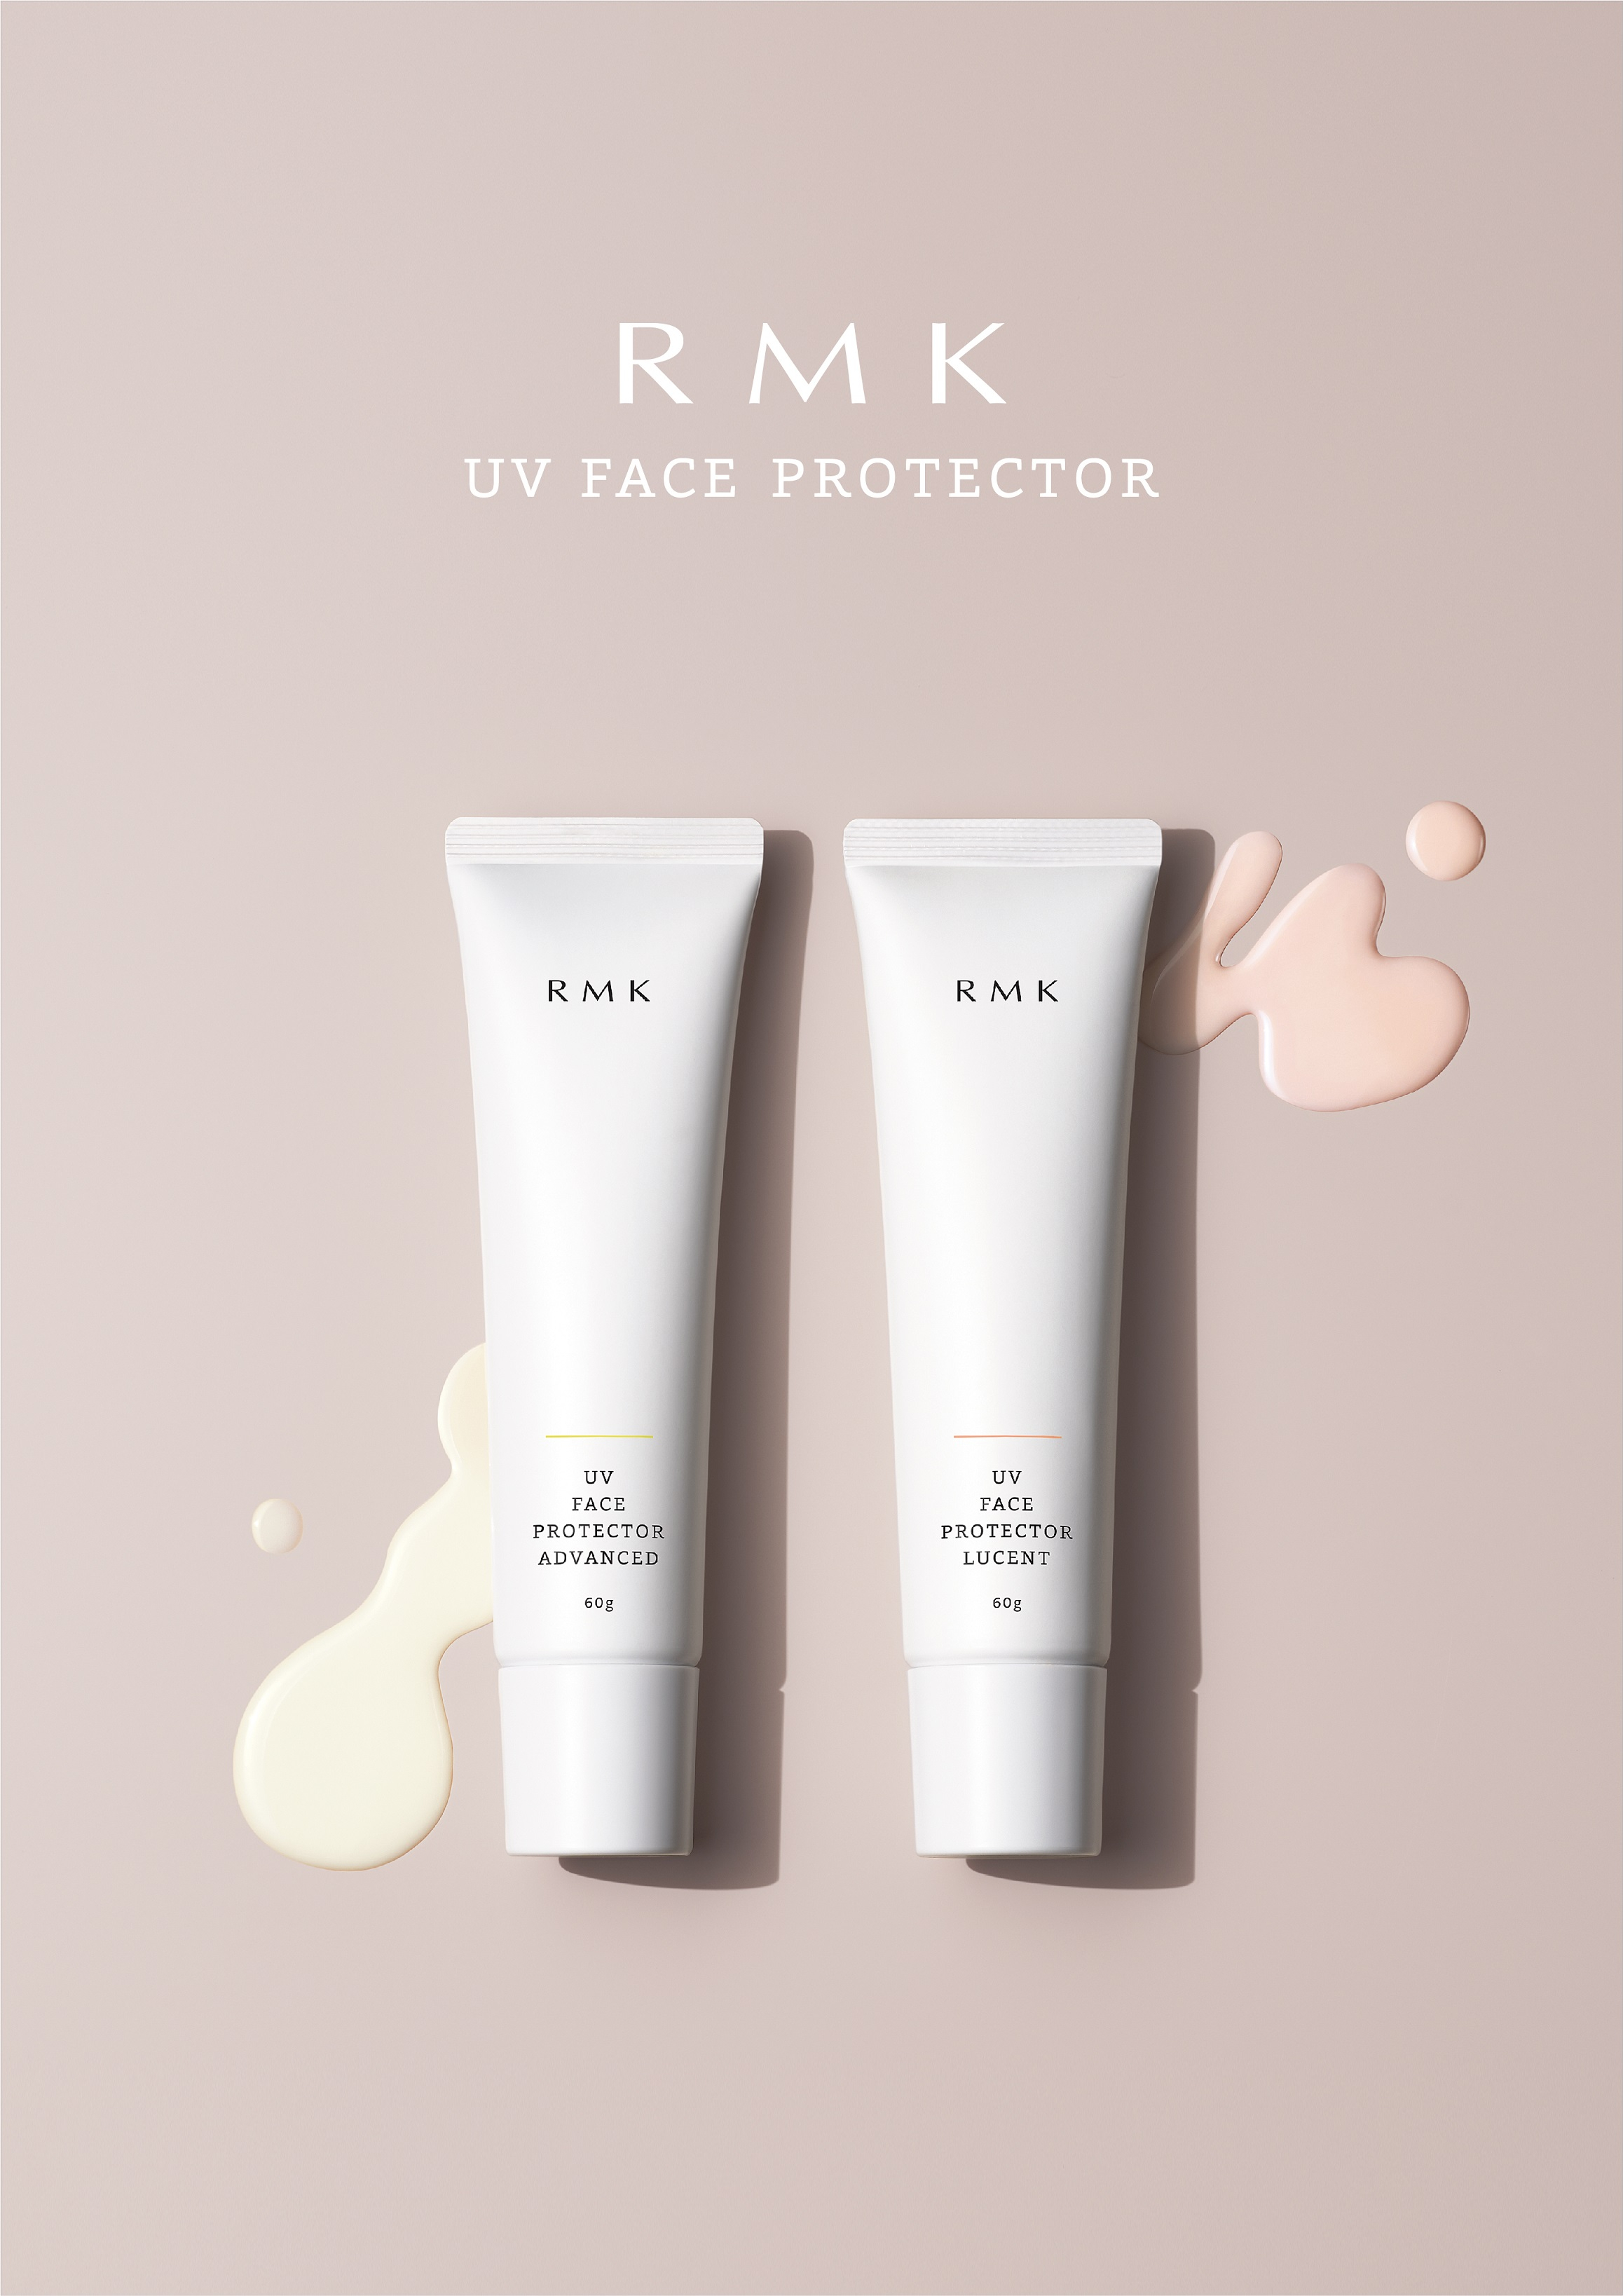 RMK_UV Face Protector_Product_Visual_small.jpg